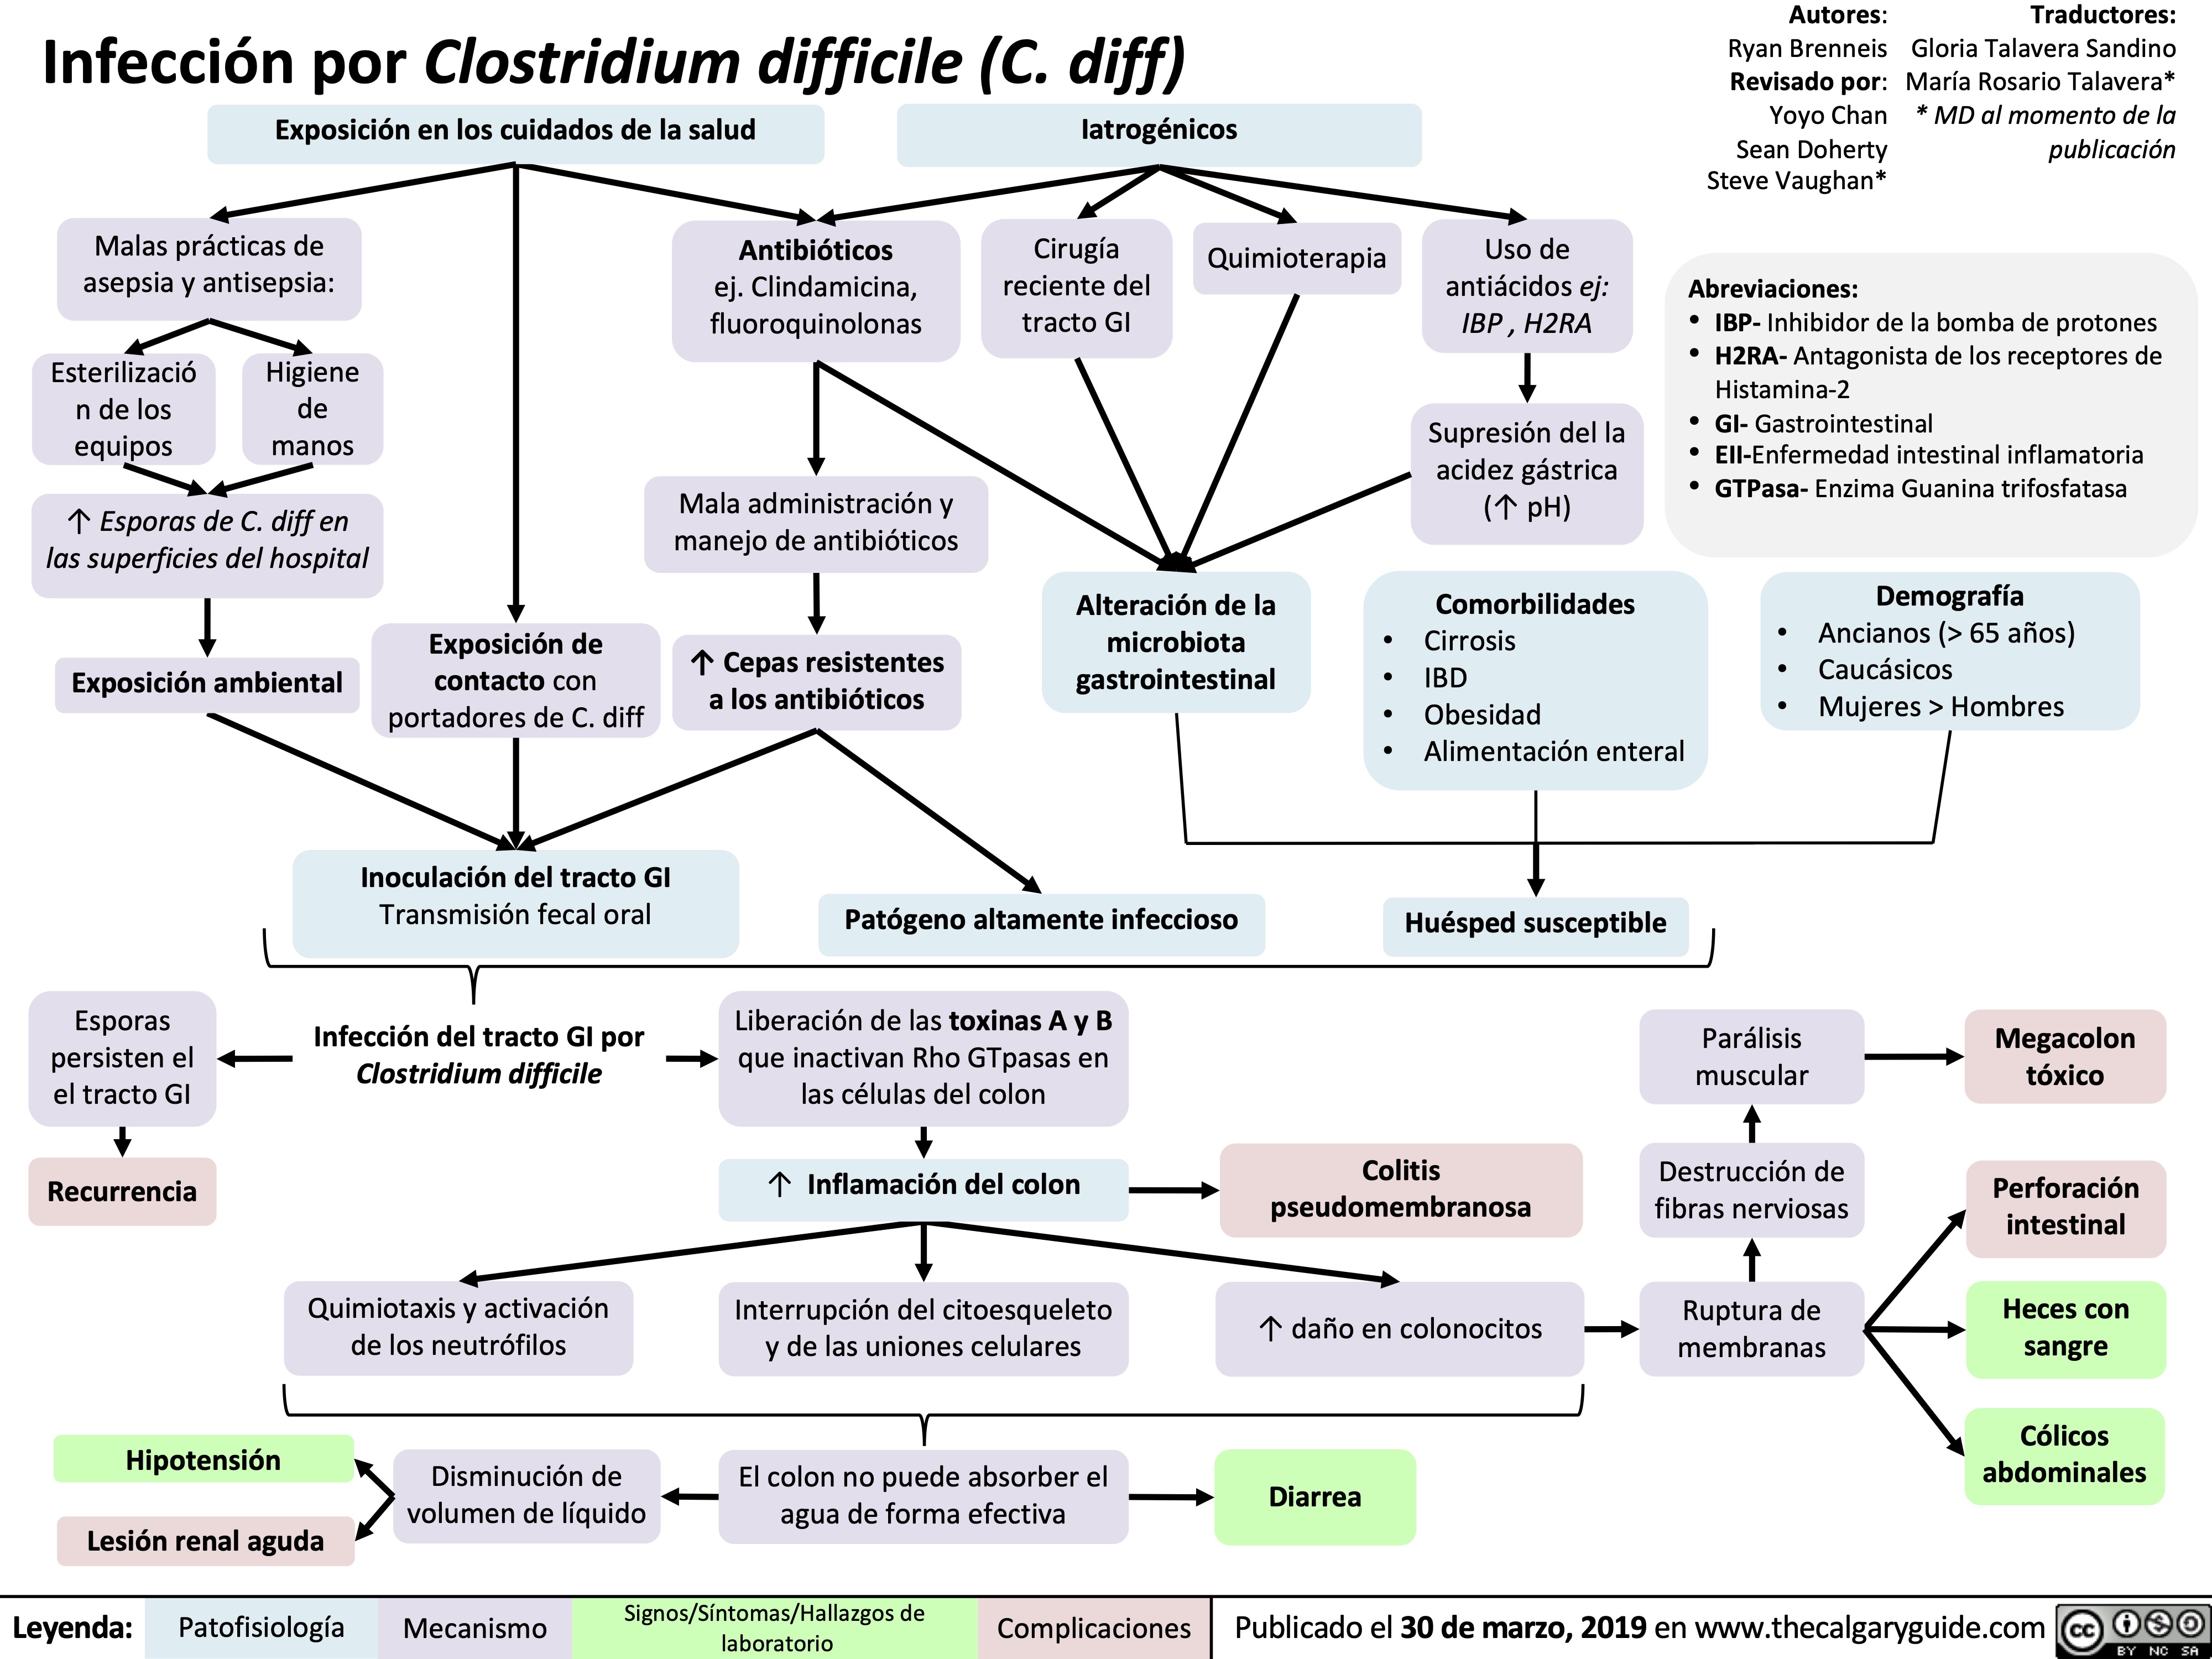 Infección por Clostridium difficile (C. diff)

infeccion-por-clostridium-difficile-c-diff